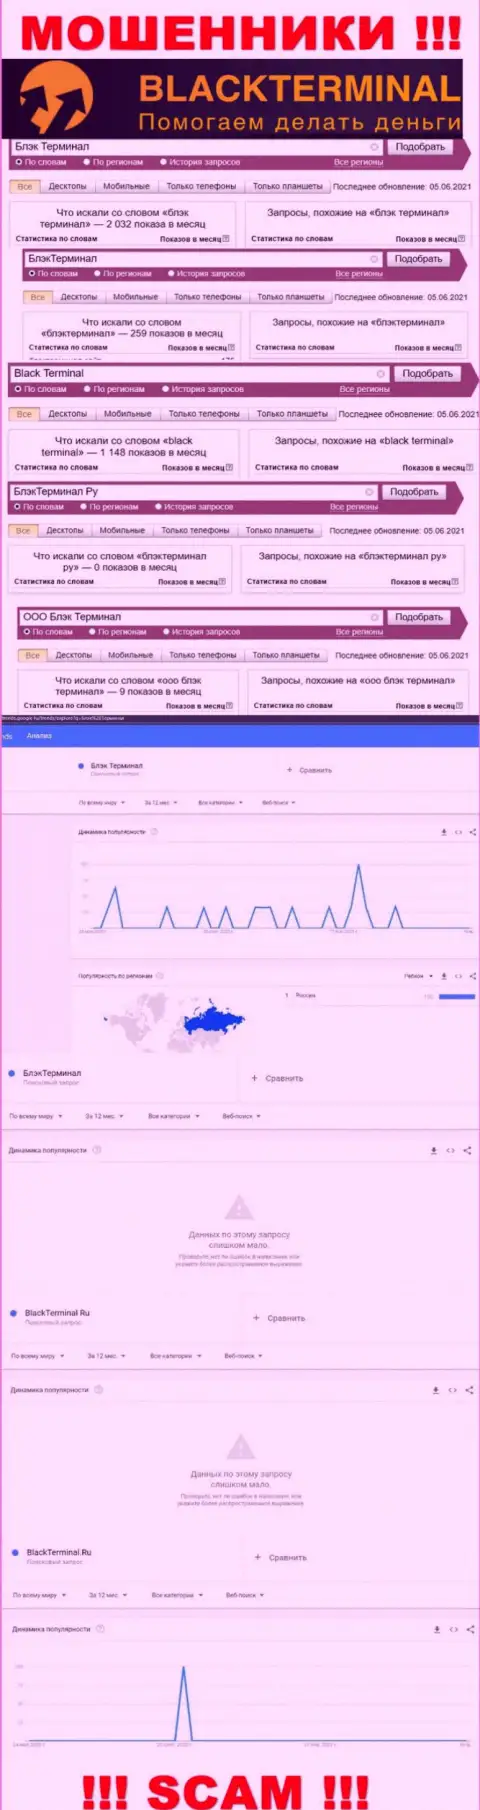 Количество поисковых запросов инфы о мошенниках BlackTerminal Ru во всемирной сети internet